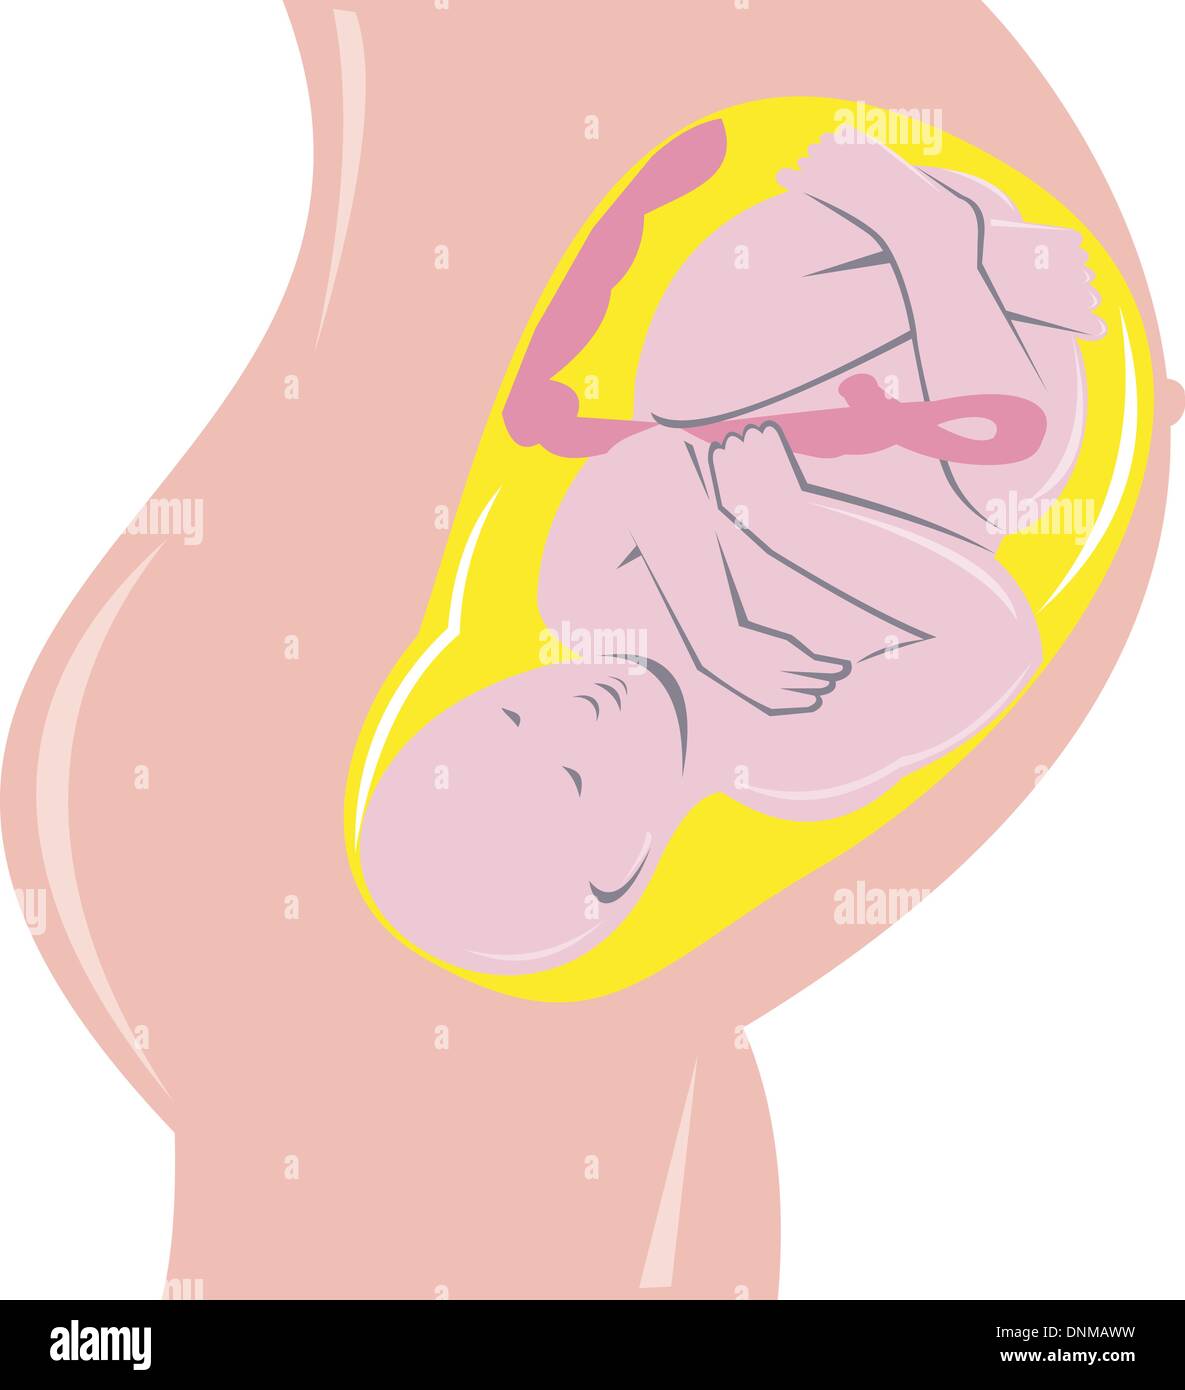 Illustrazione sullo sviluppo del feto umano all'interno del grembo fatto rétro xilografia stile. Illustrazione Vettoriale